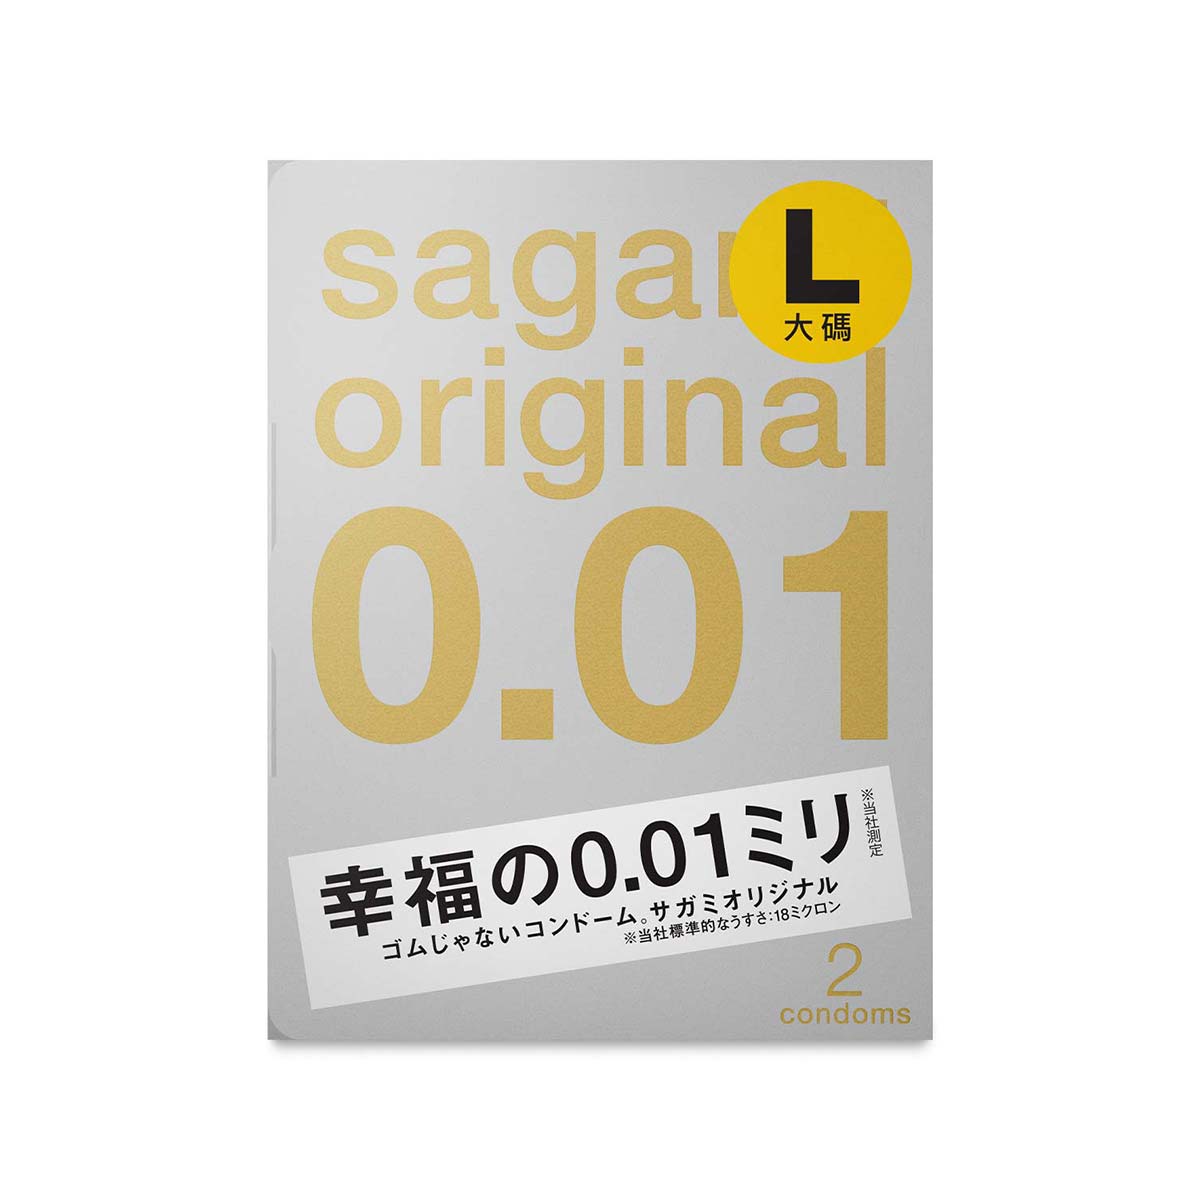 Sagami Original 0.01 L-size 2s